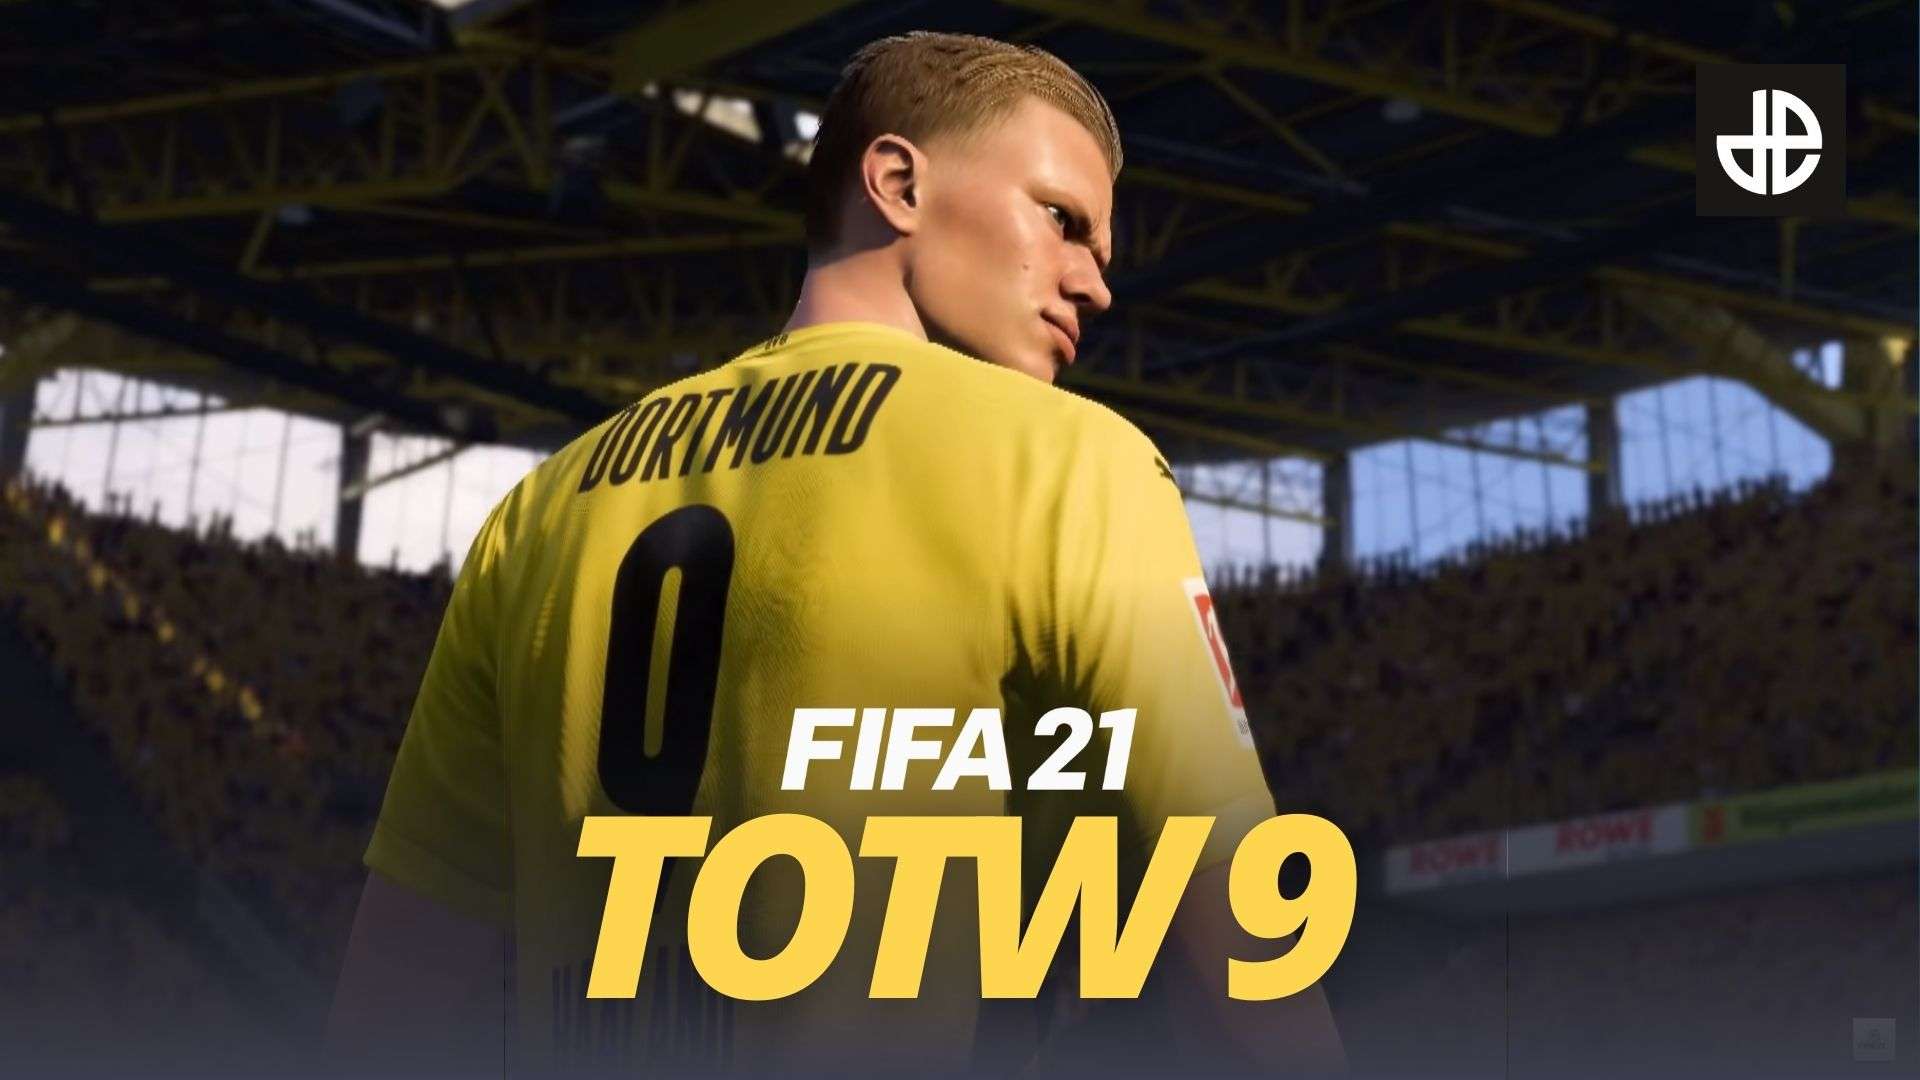 Dortmund striker Erling Haaland stands behind FIFA 21 TOTW 9 logo.